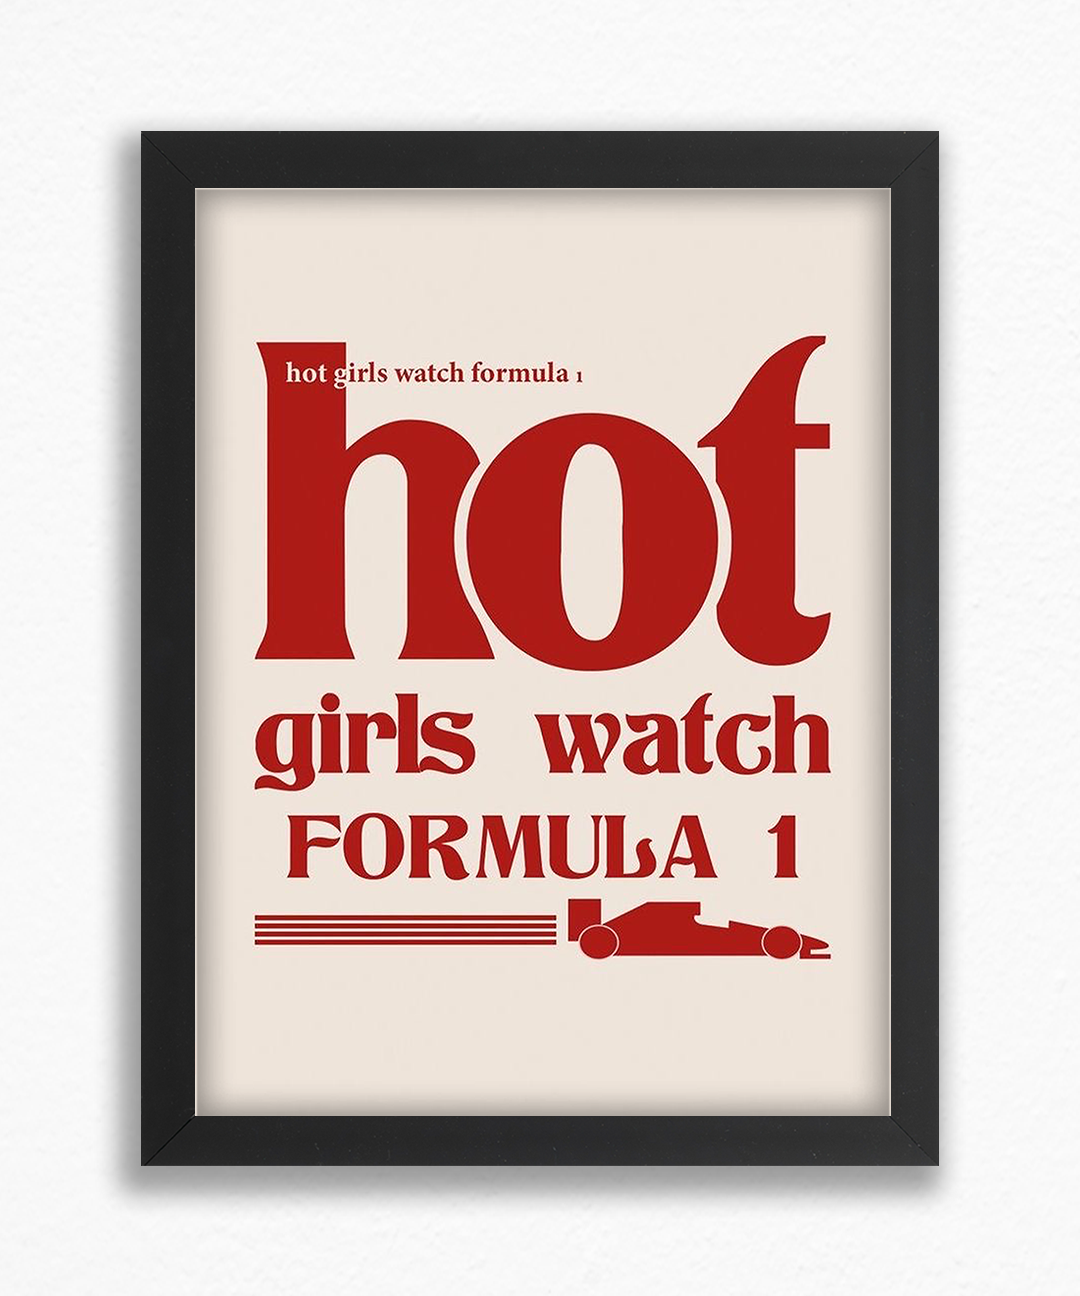 Hot girls watch formula 1